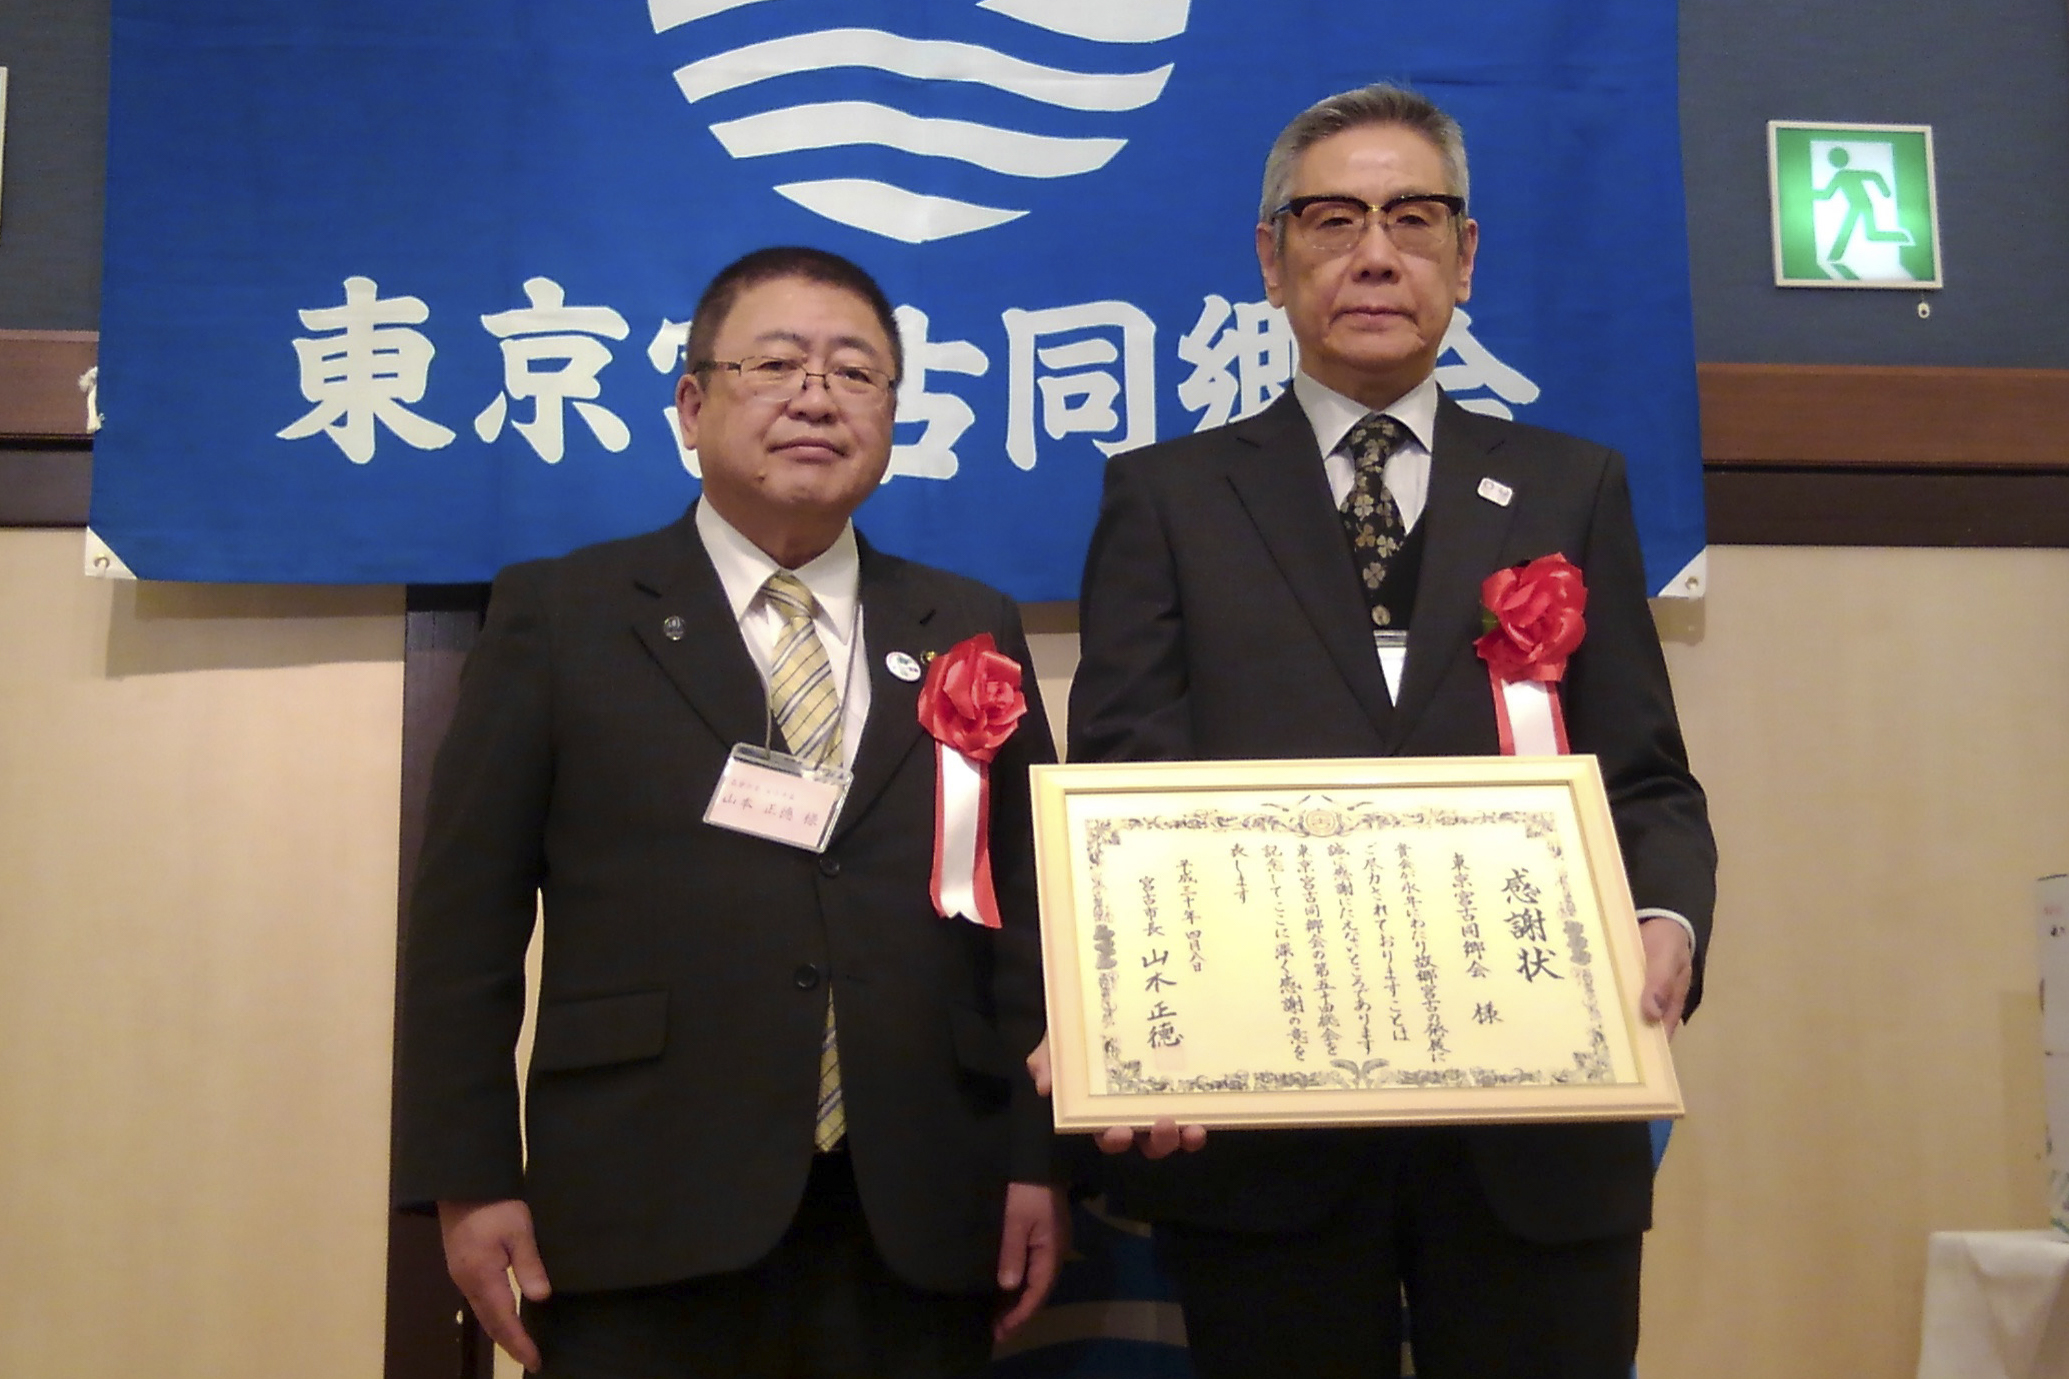 東京宮古同郷会の白土正治会長に山本市長から感謝状を贈呈